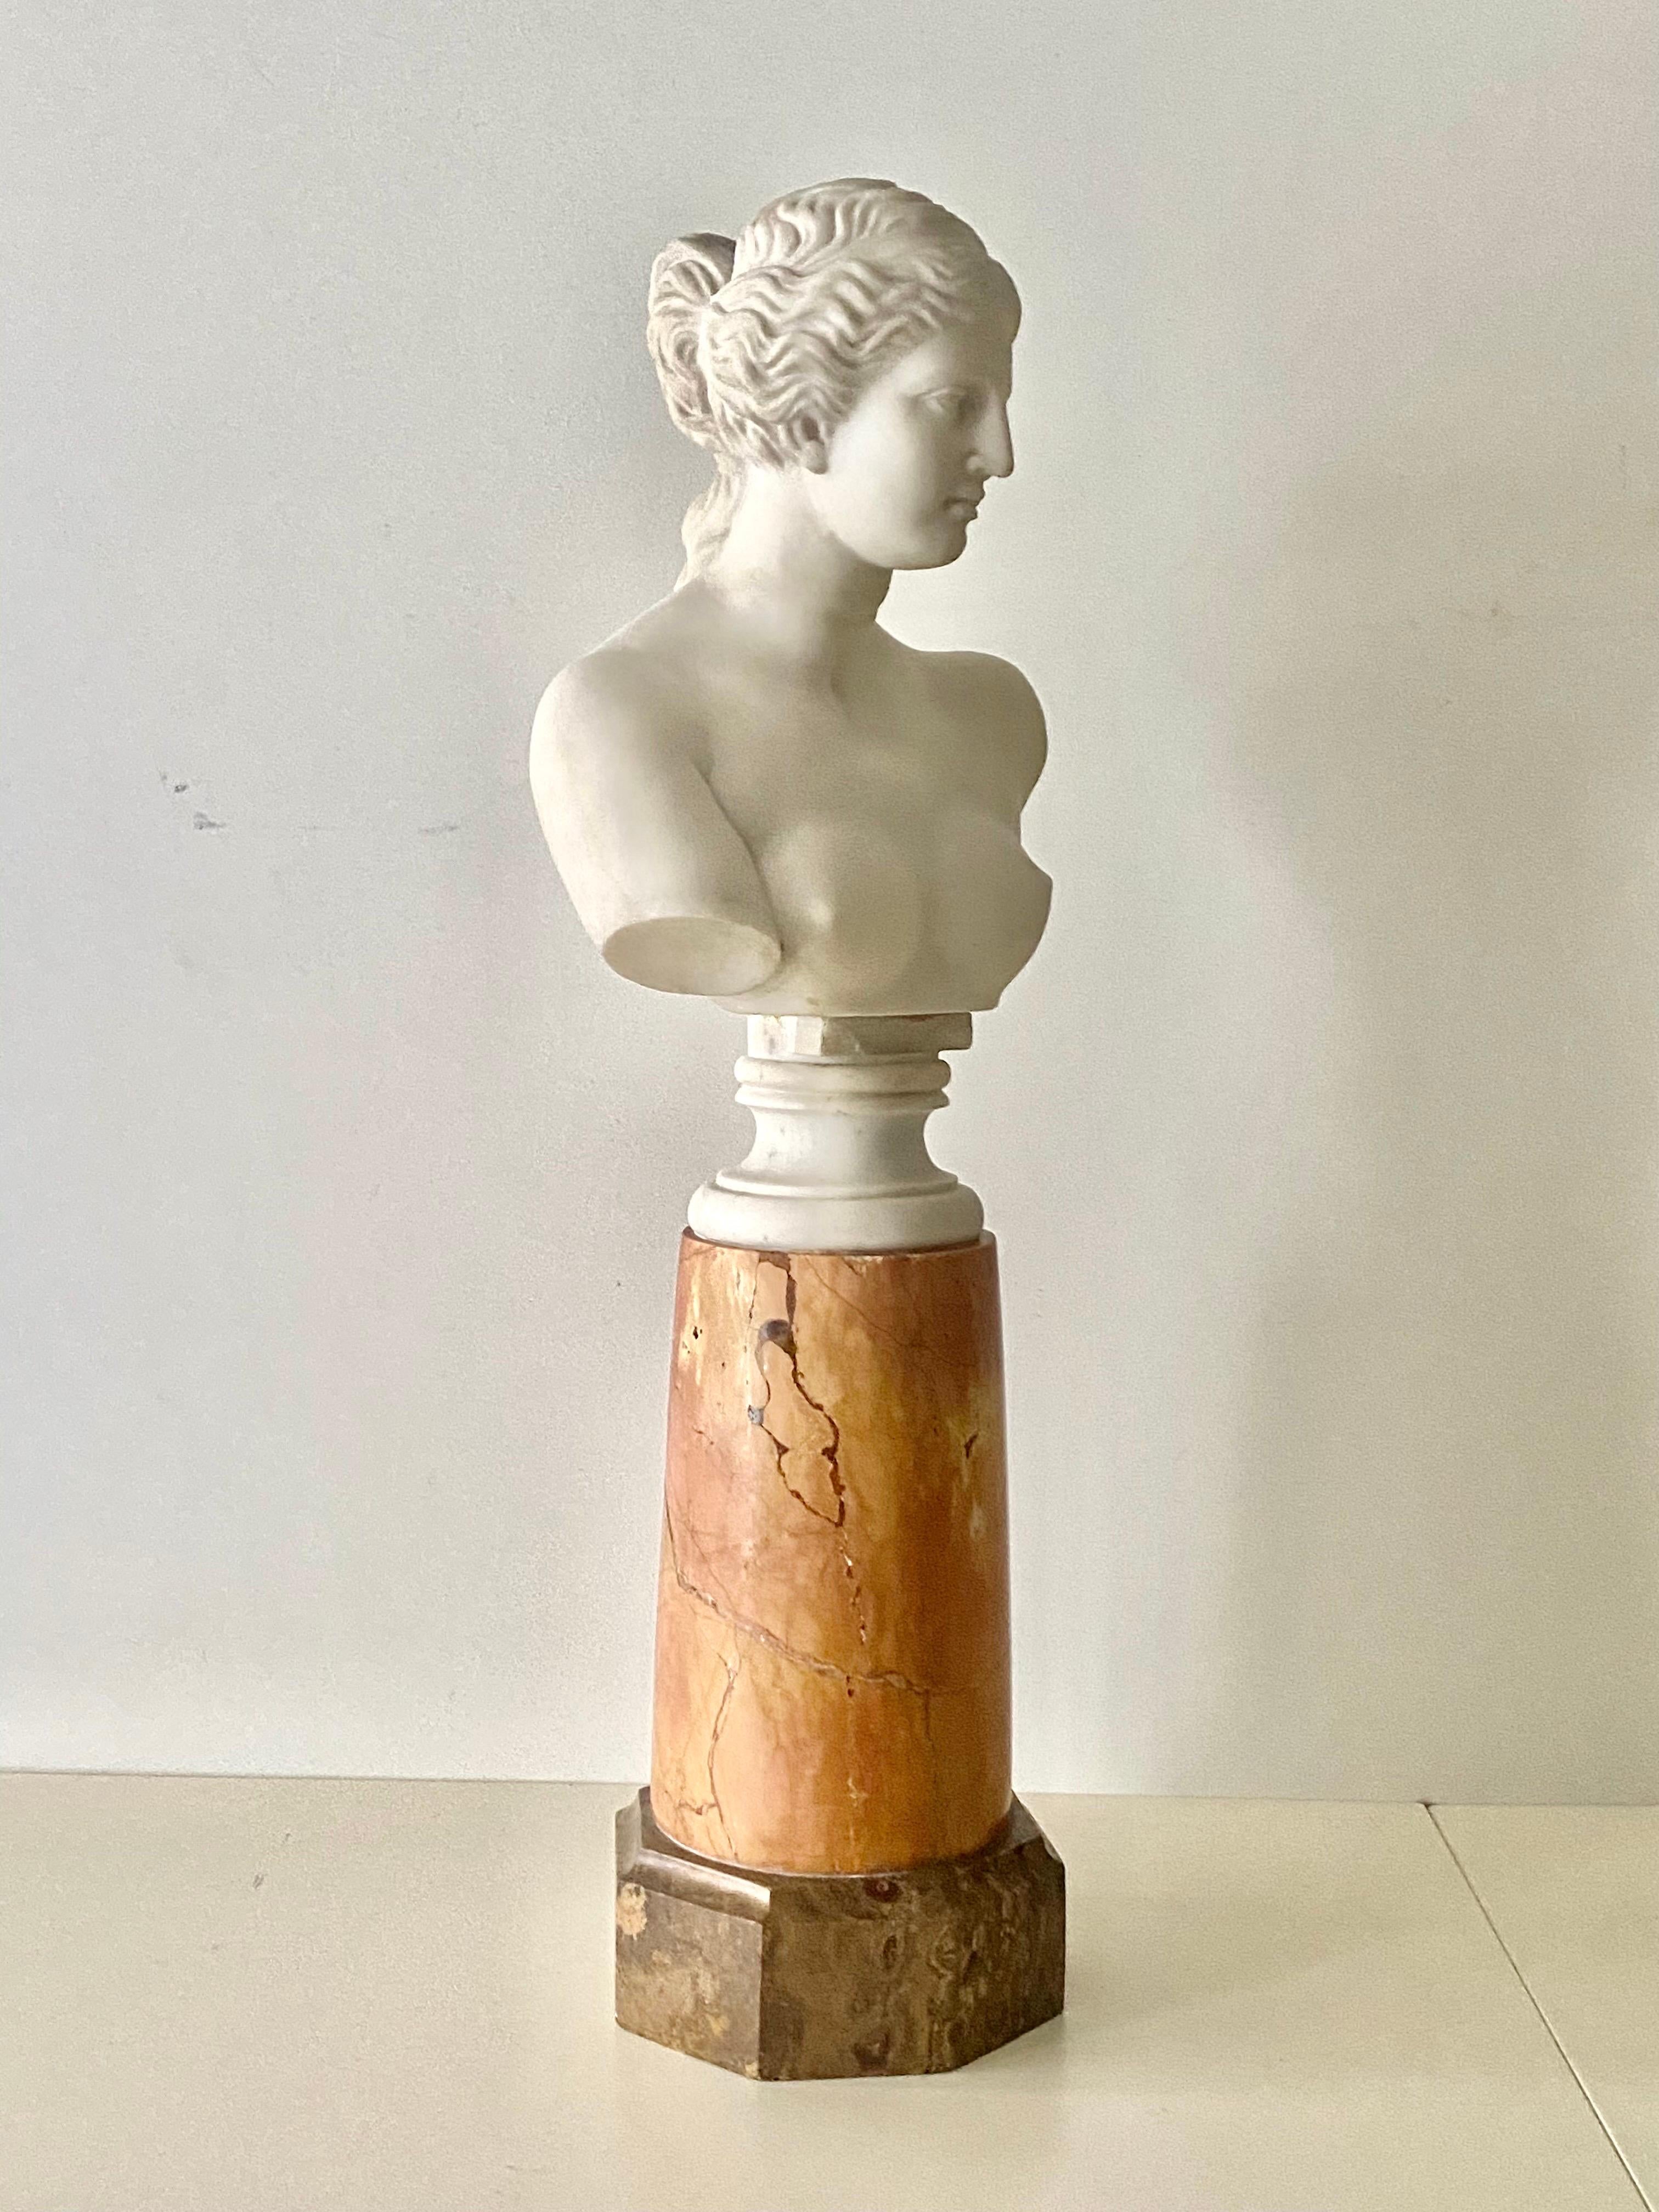 Venus De Milo Marble - 13 For Sale on 1stDibs | venus de milo figure, venus  de milo marble sculpture, venus de milo statue for sale